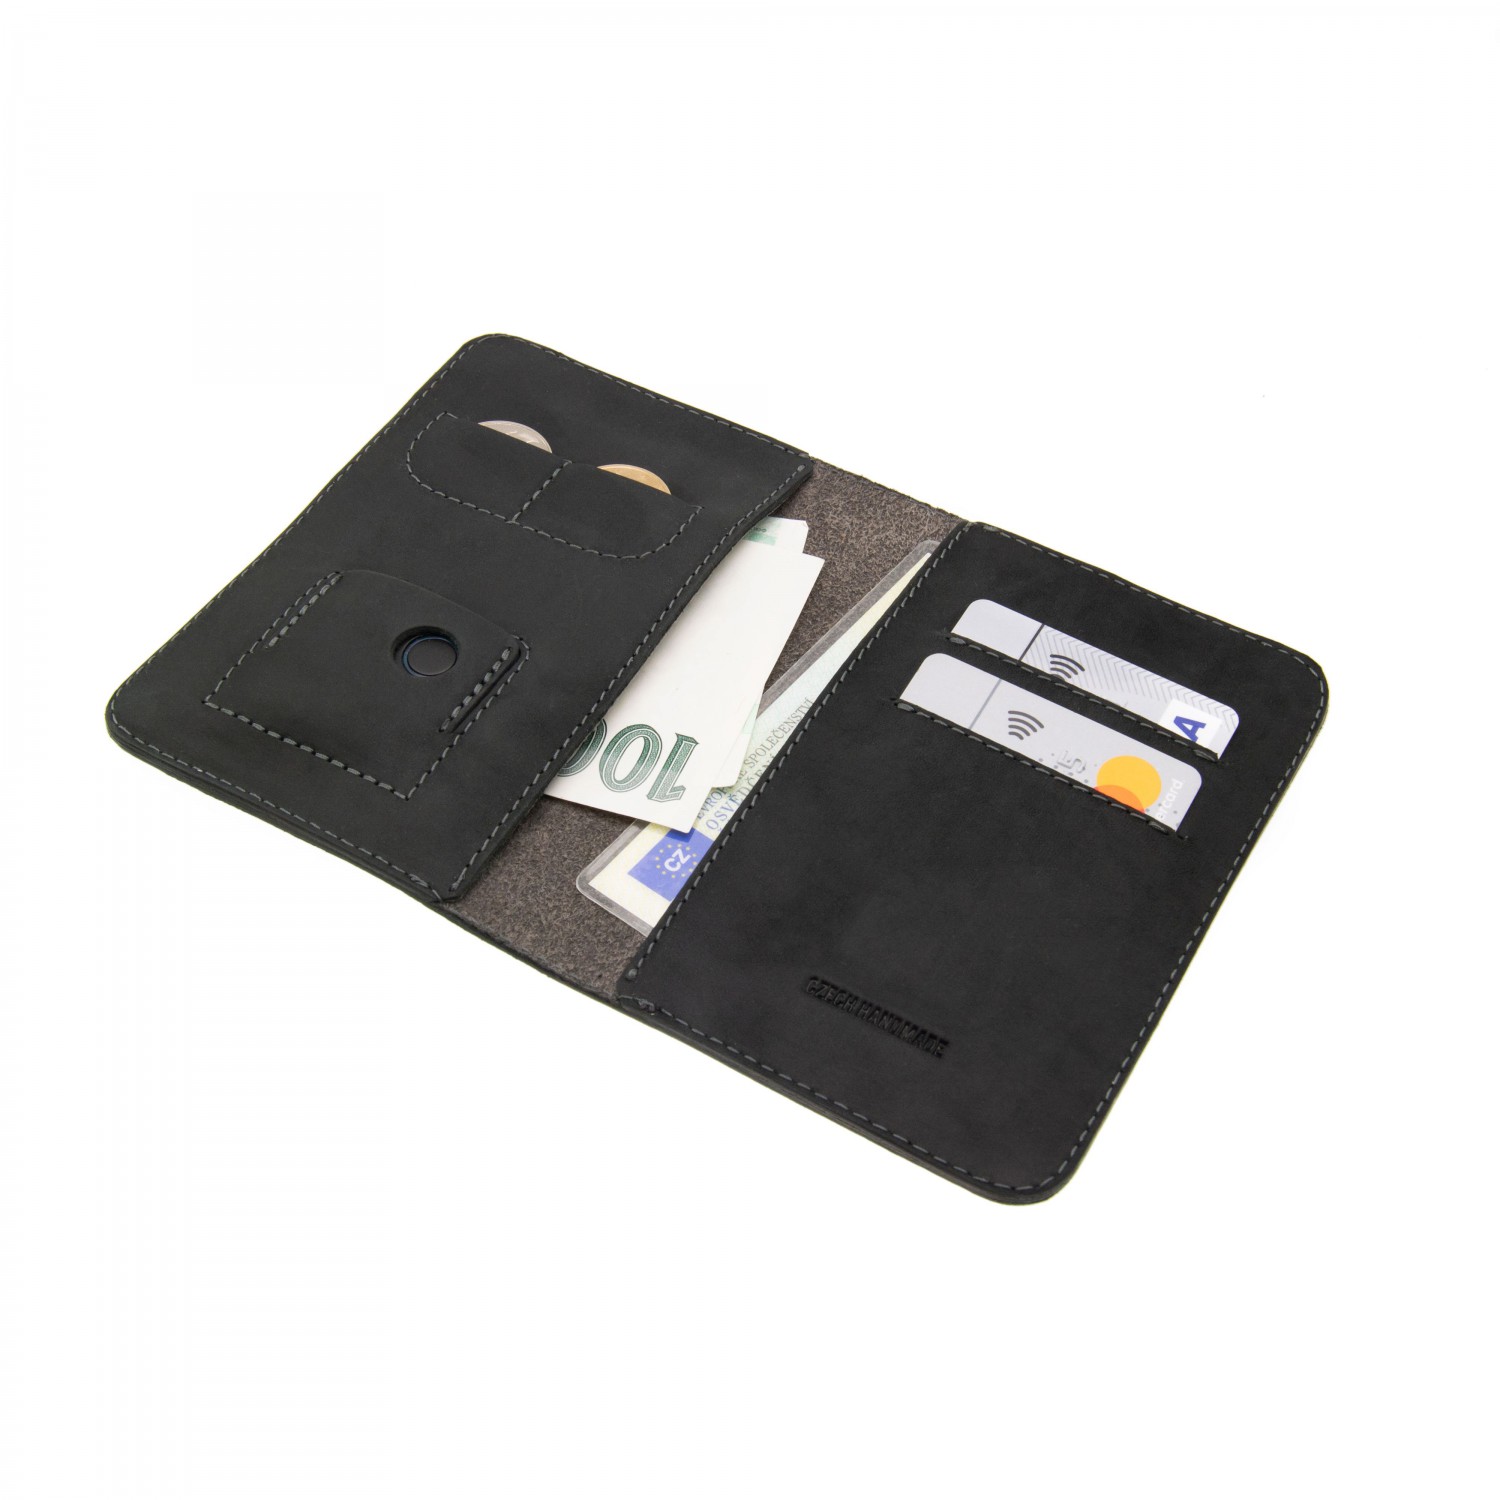 Kožená peněženka FIXED Smile Wallet XL se smart trackerem, černá